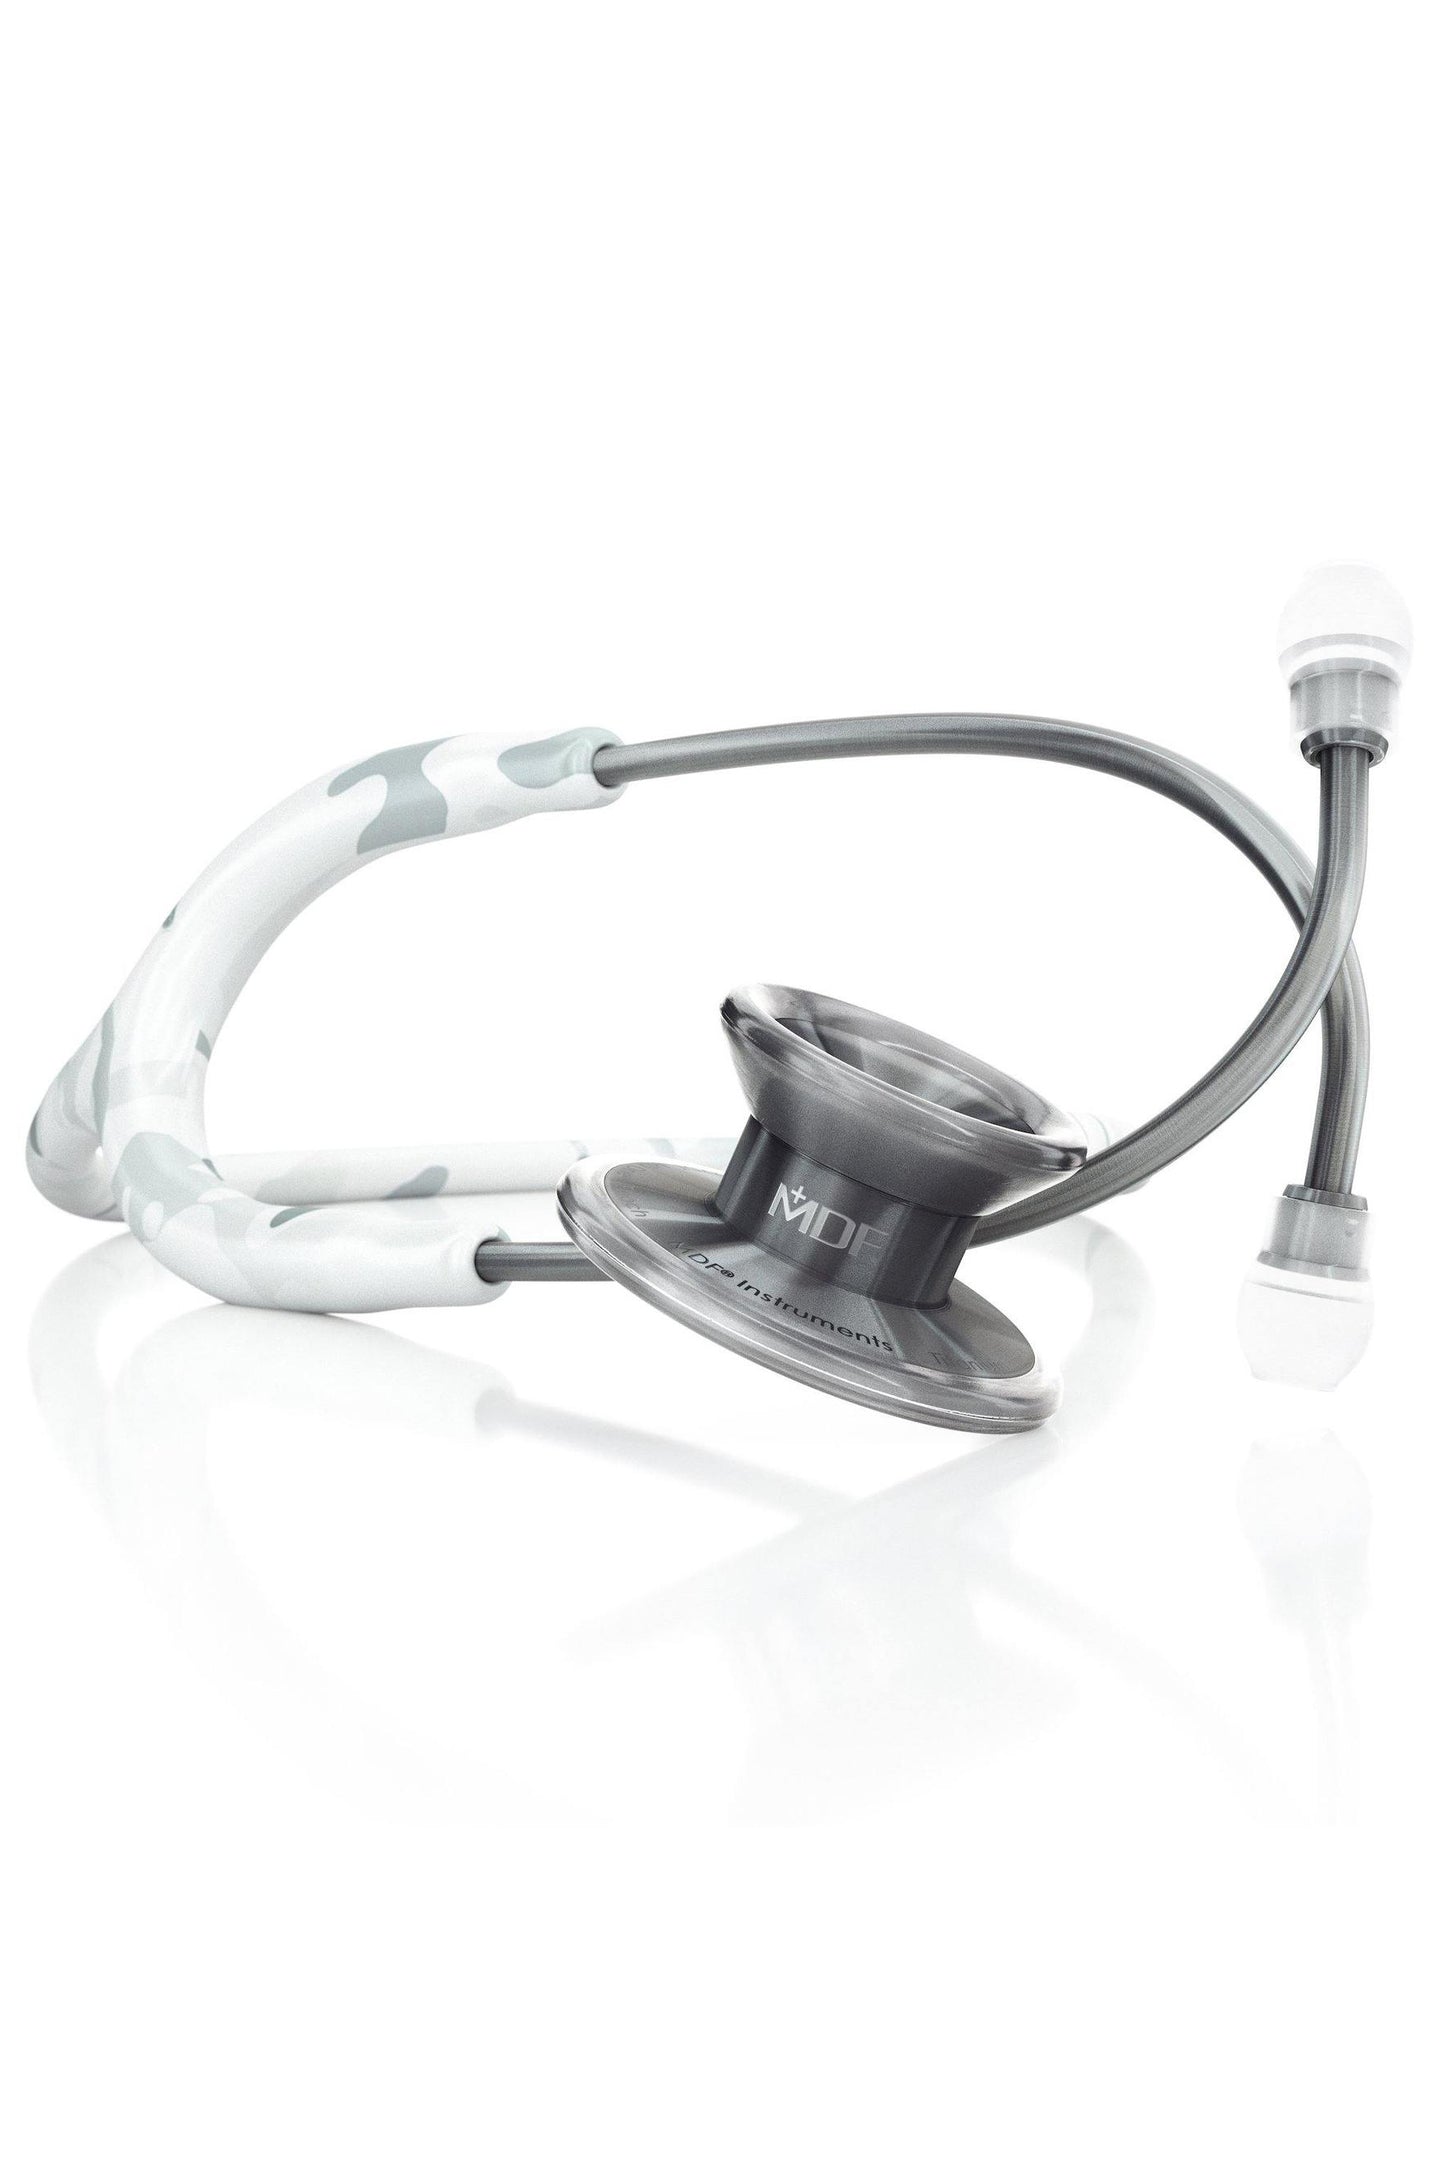 MD One® Epoch® Titanium Adult Stethoscope - Frostfight Camo/Metalika